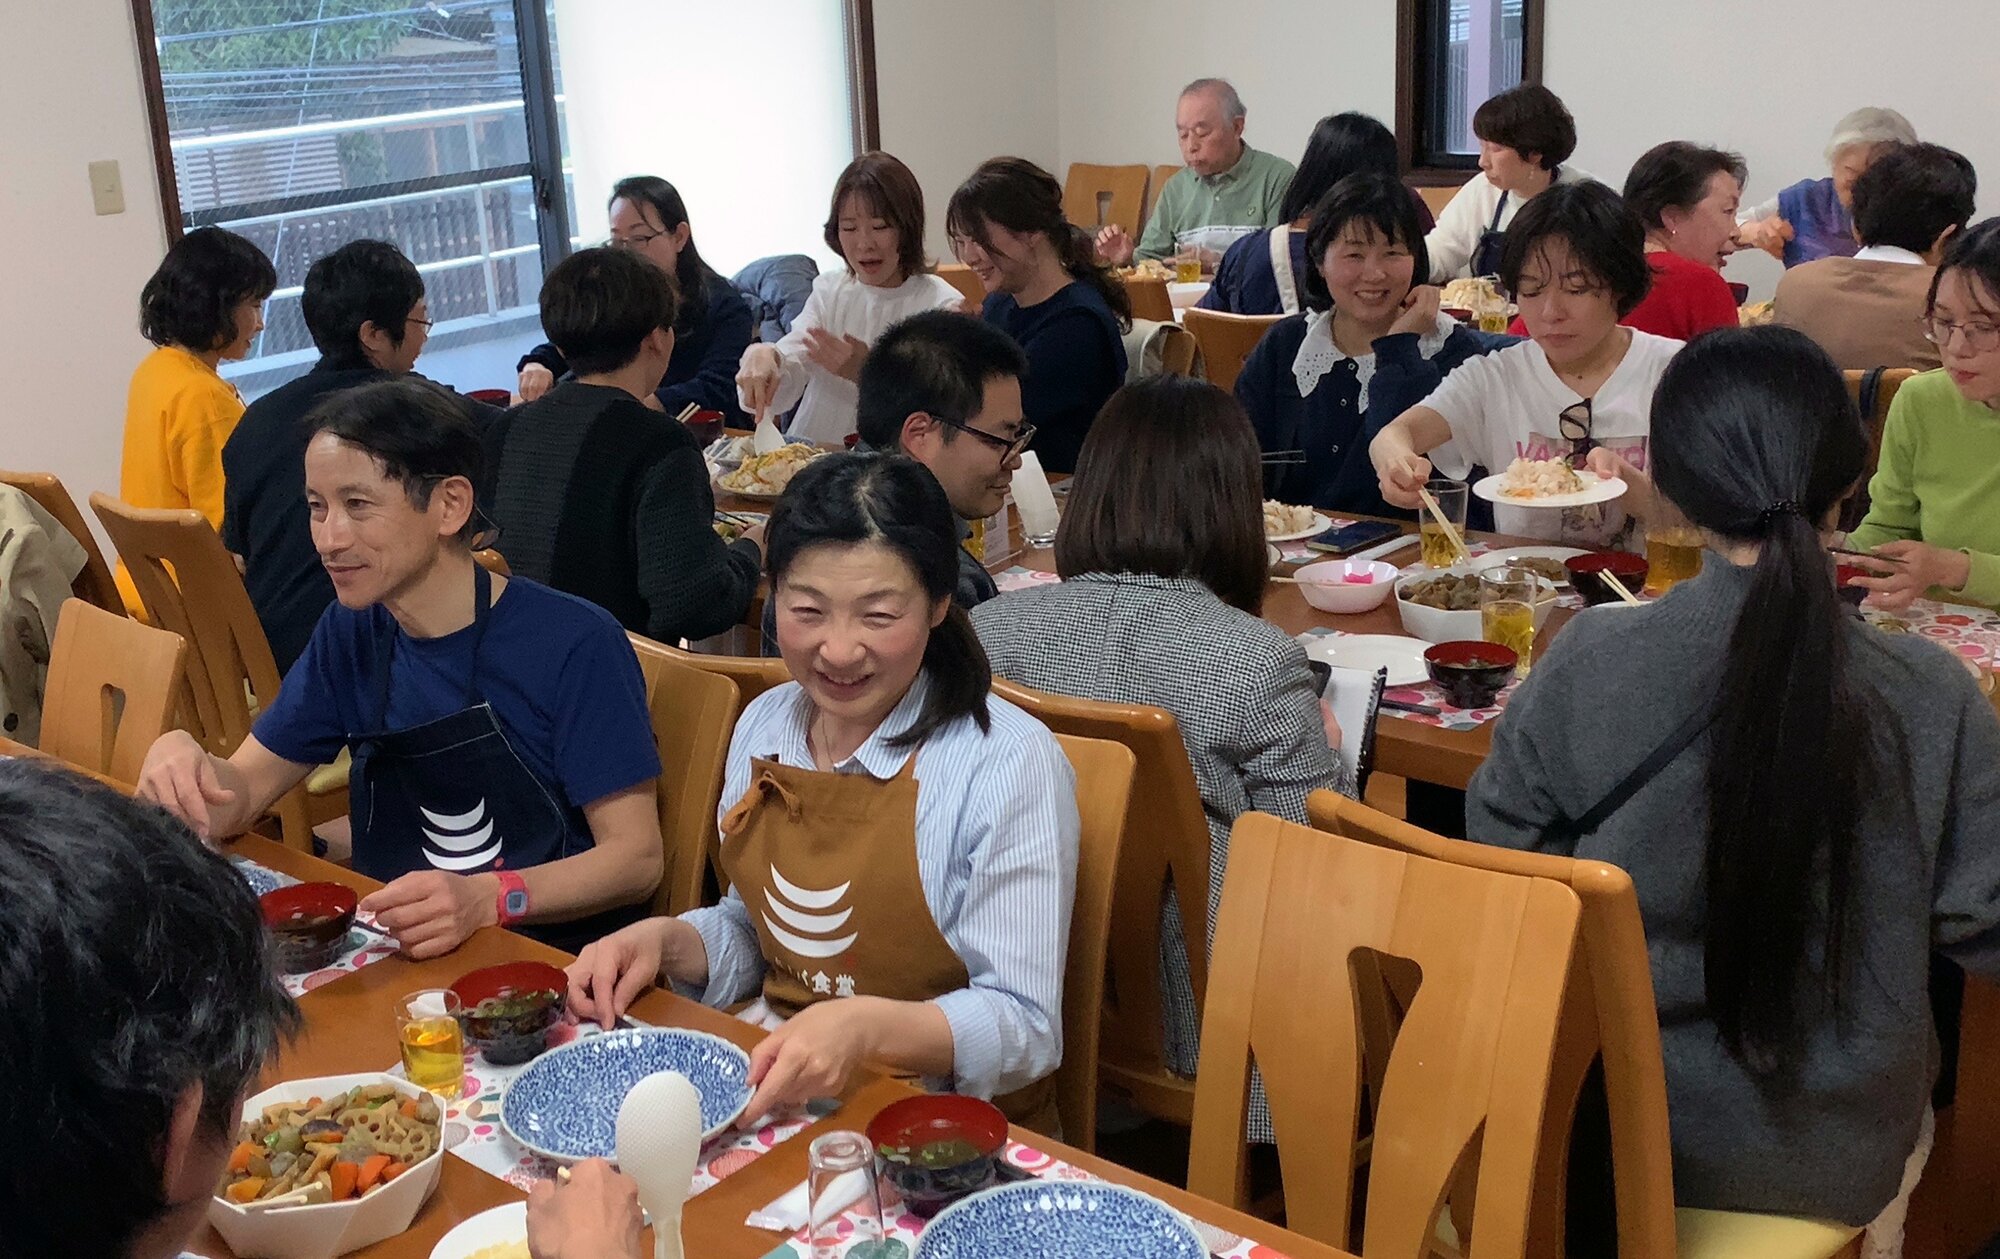 トークイベントの後、食事と対話による「つながり」の場を提供する「タノバ食堂」が開かれた（撮影・亀松太郎）